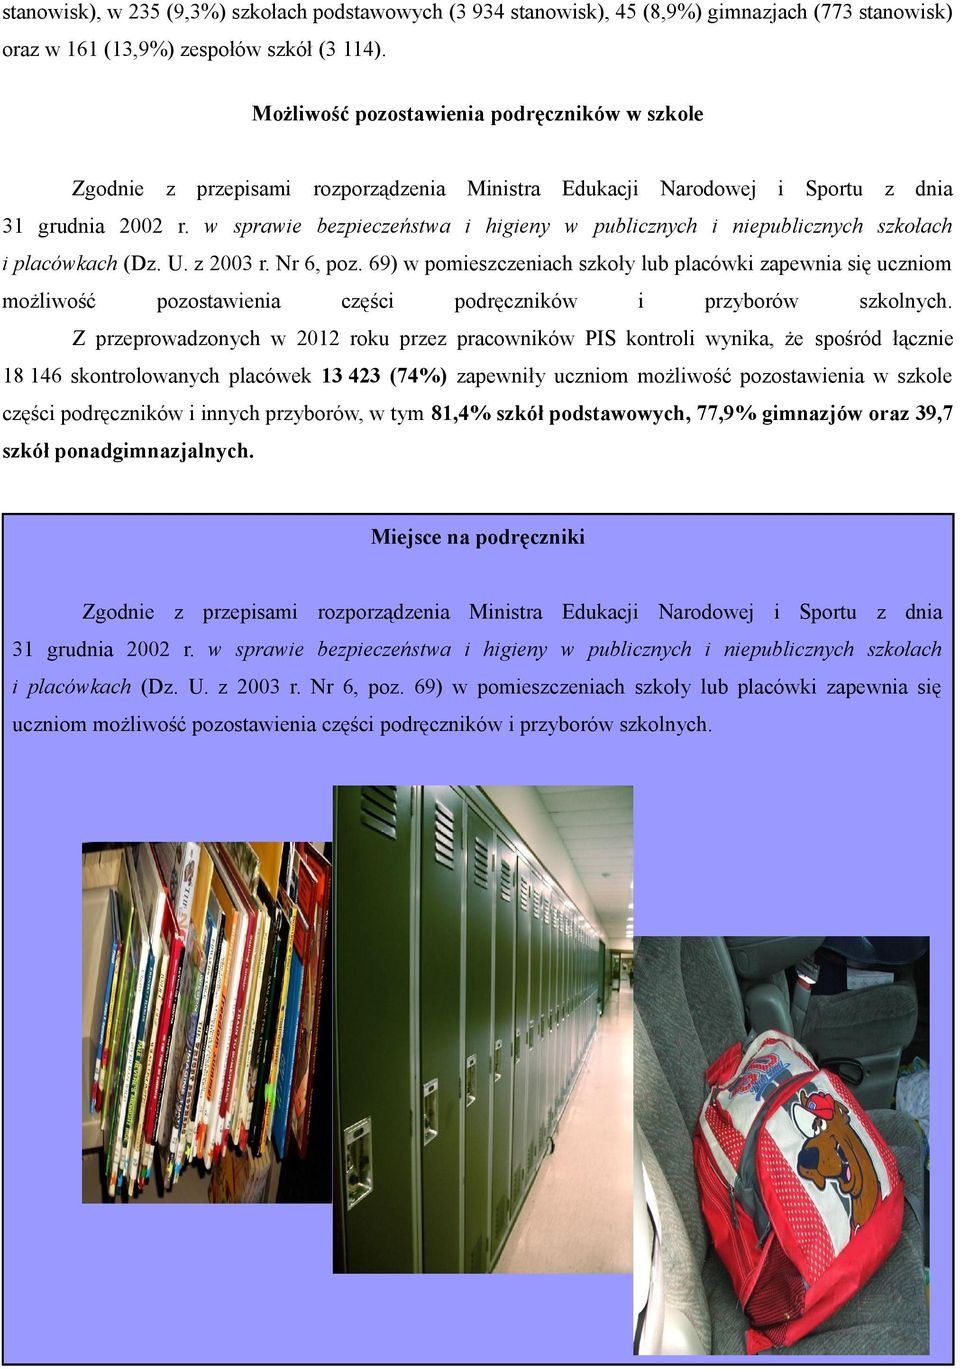 w sprawie bezpieczeństwa i higieny w publicznych i niepublicznych szkołach i placówkach (Dz. U. z 2003 r. Nr 6, poz.